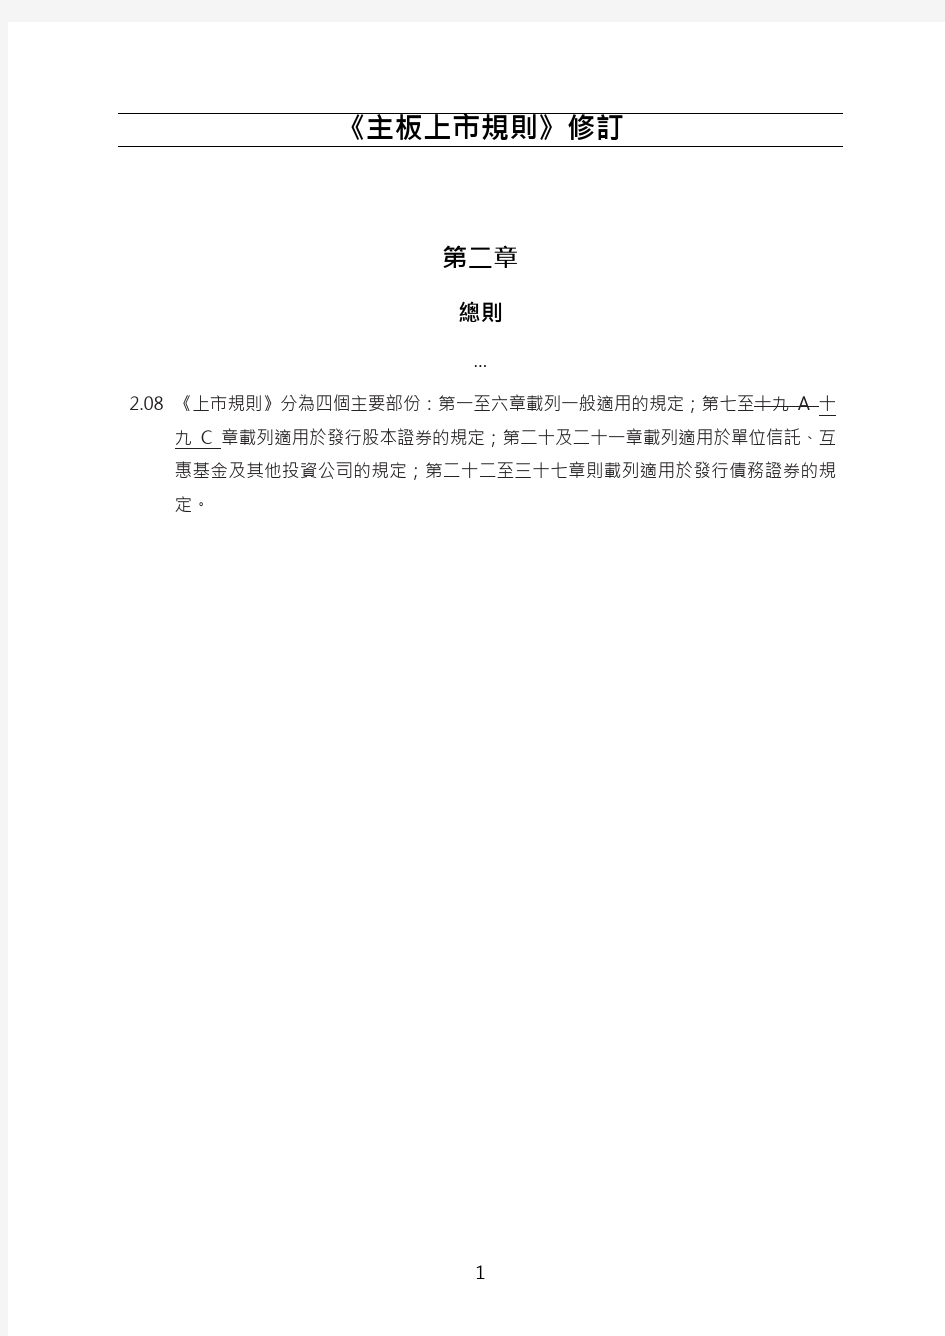 香港交易所主板上市规则修订案(2018)